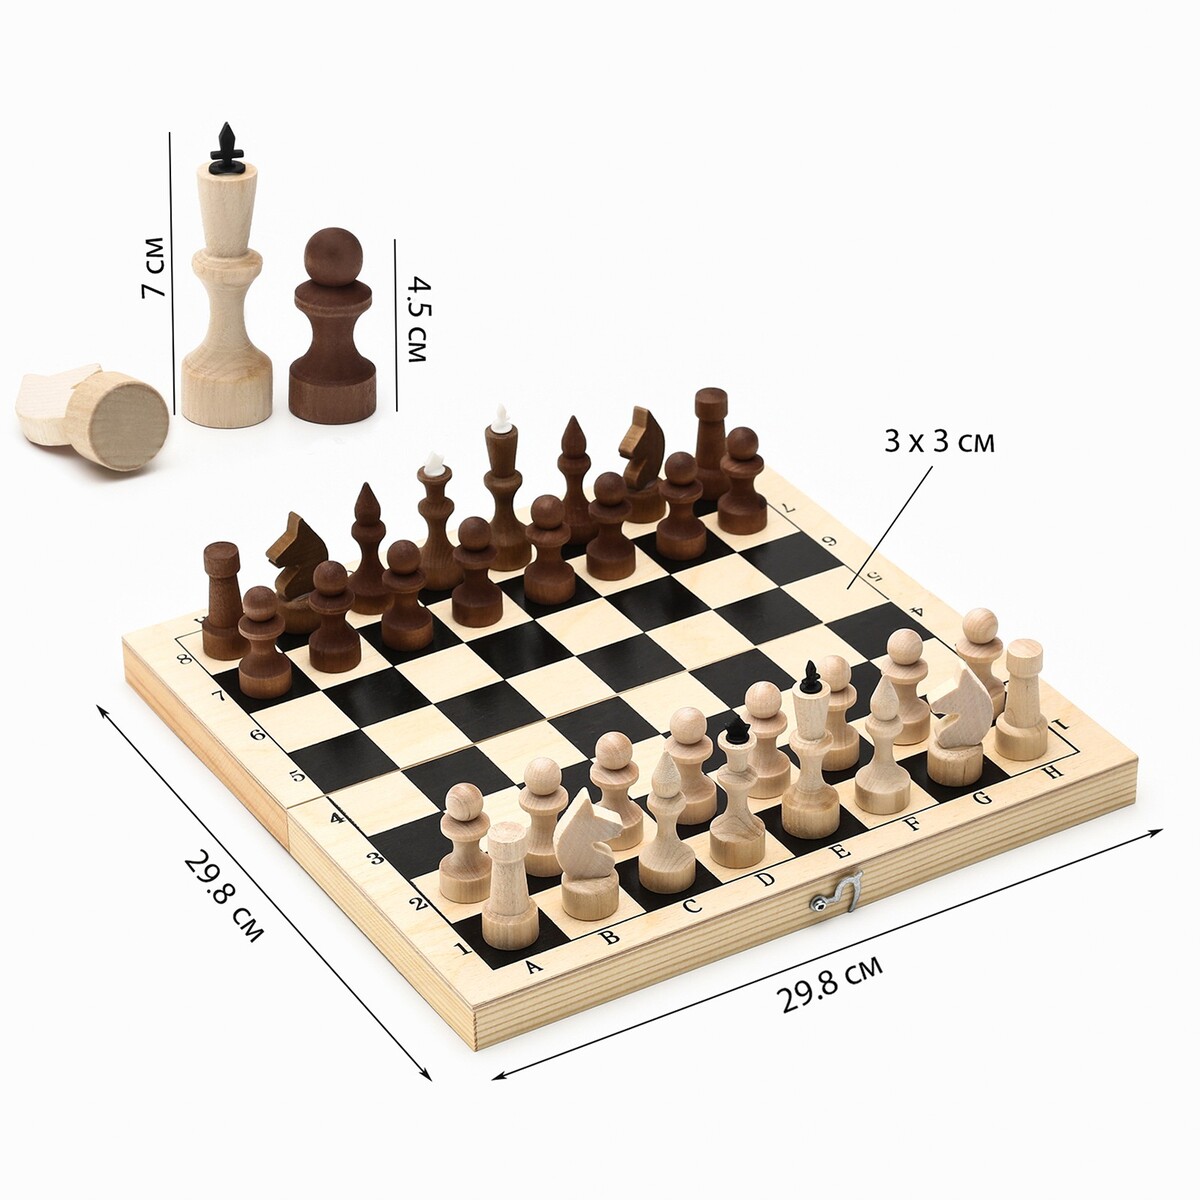 Шахматы деревянные обиходные 29.8 х 29.8 см, король h-7.2 см, пешка h-4.5 см russia настольная игра шахматы деревянные n585 h37170